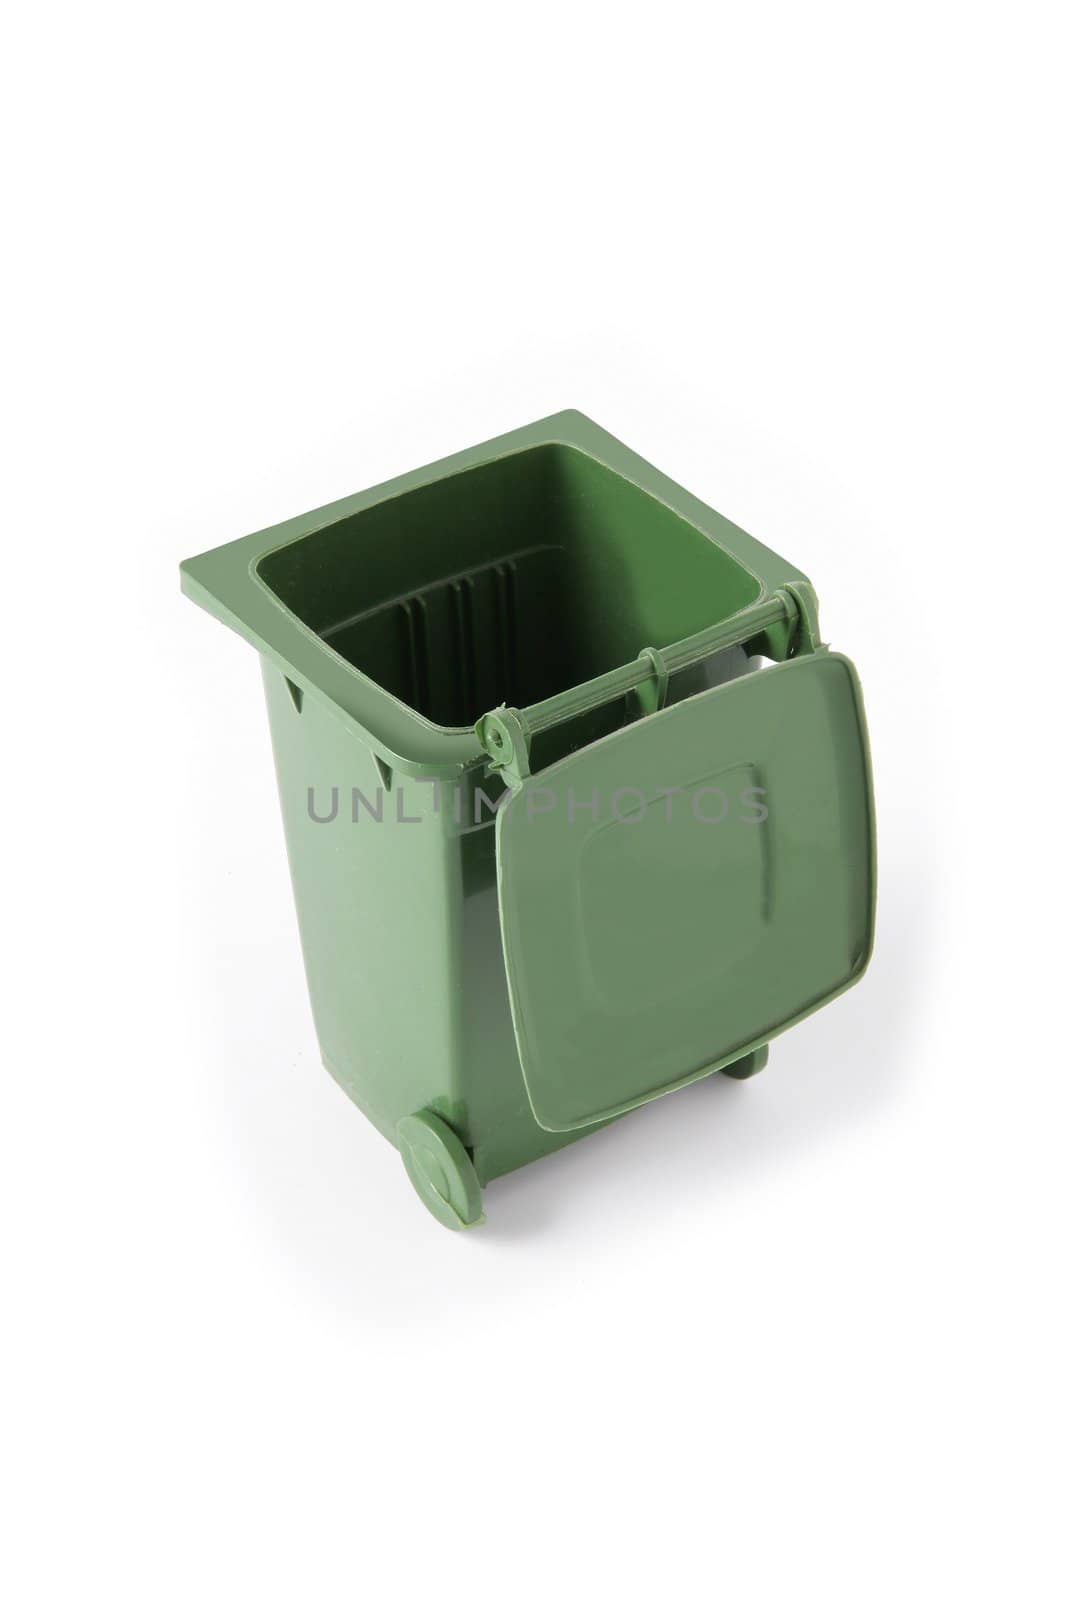 Green wheelie bin by phovoir